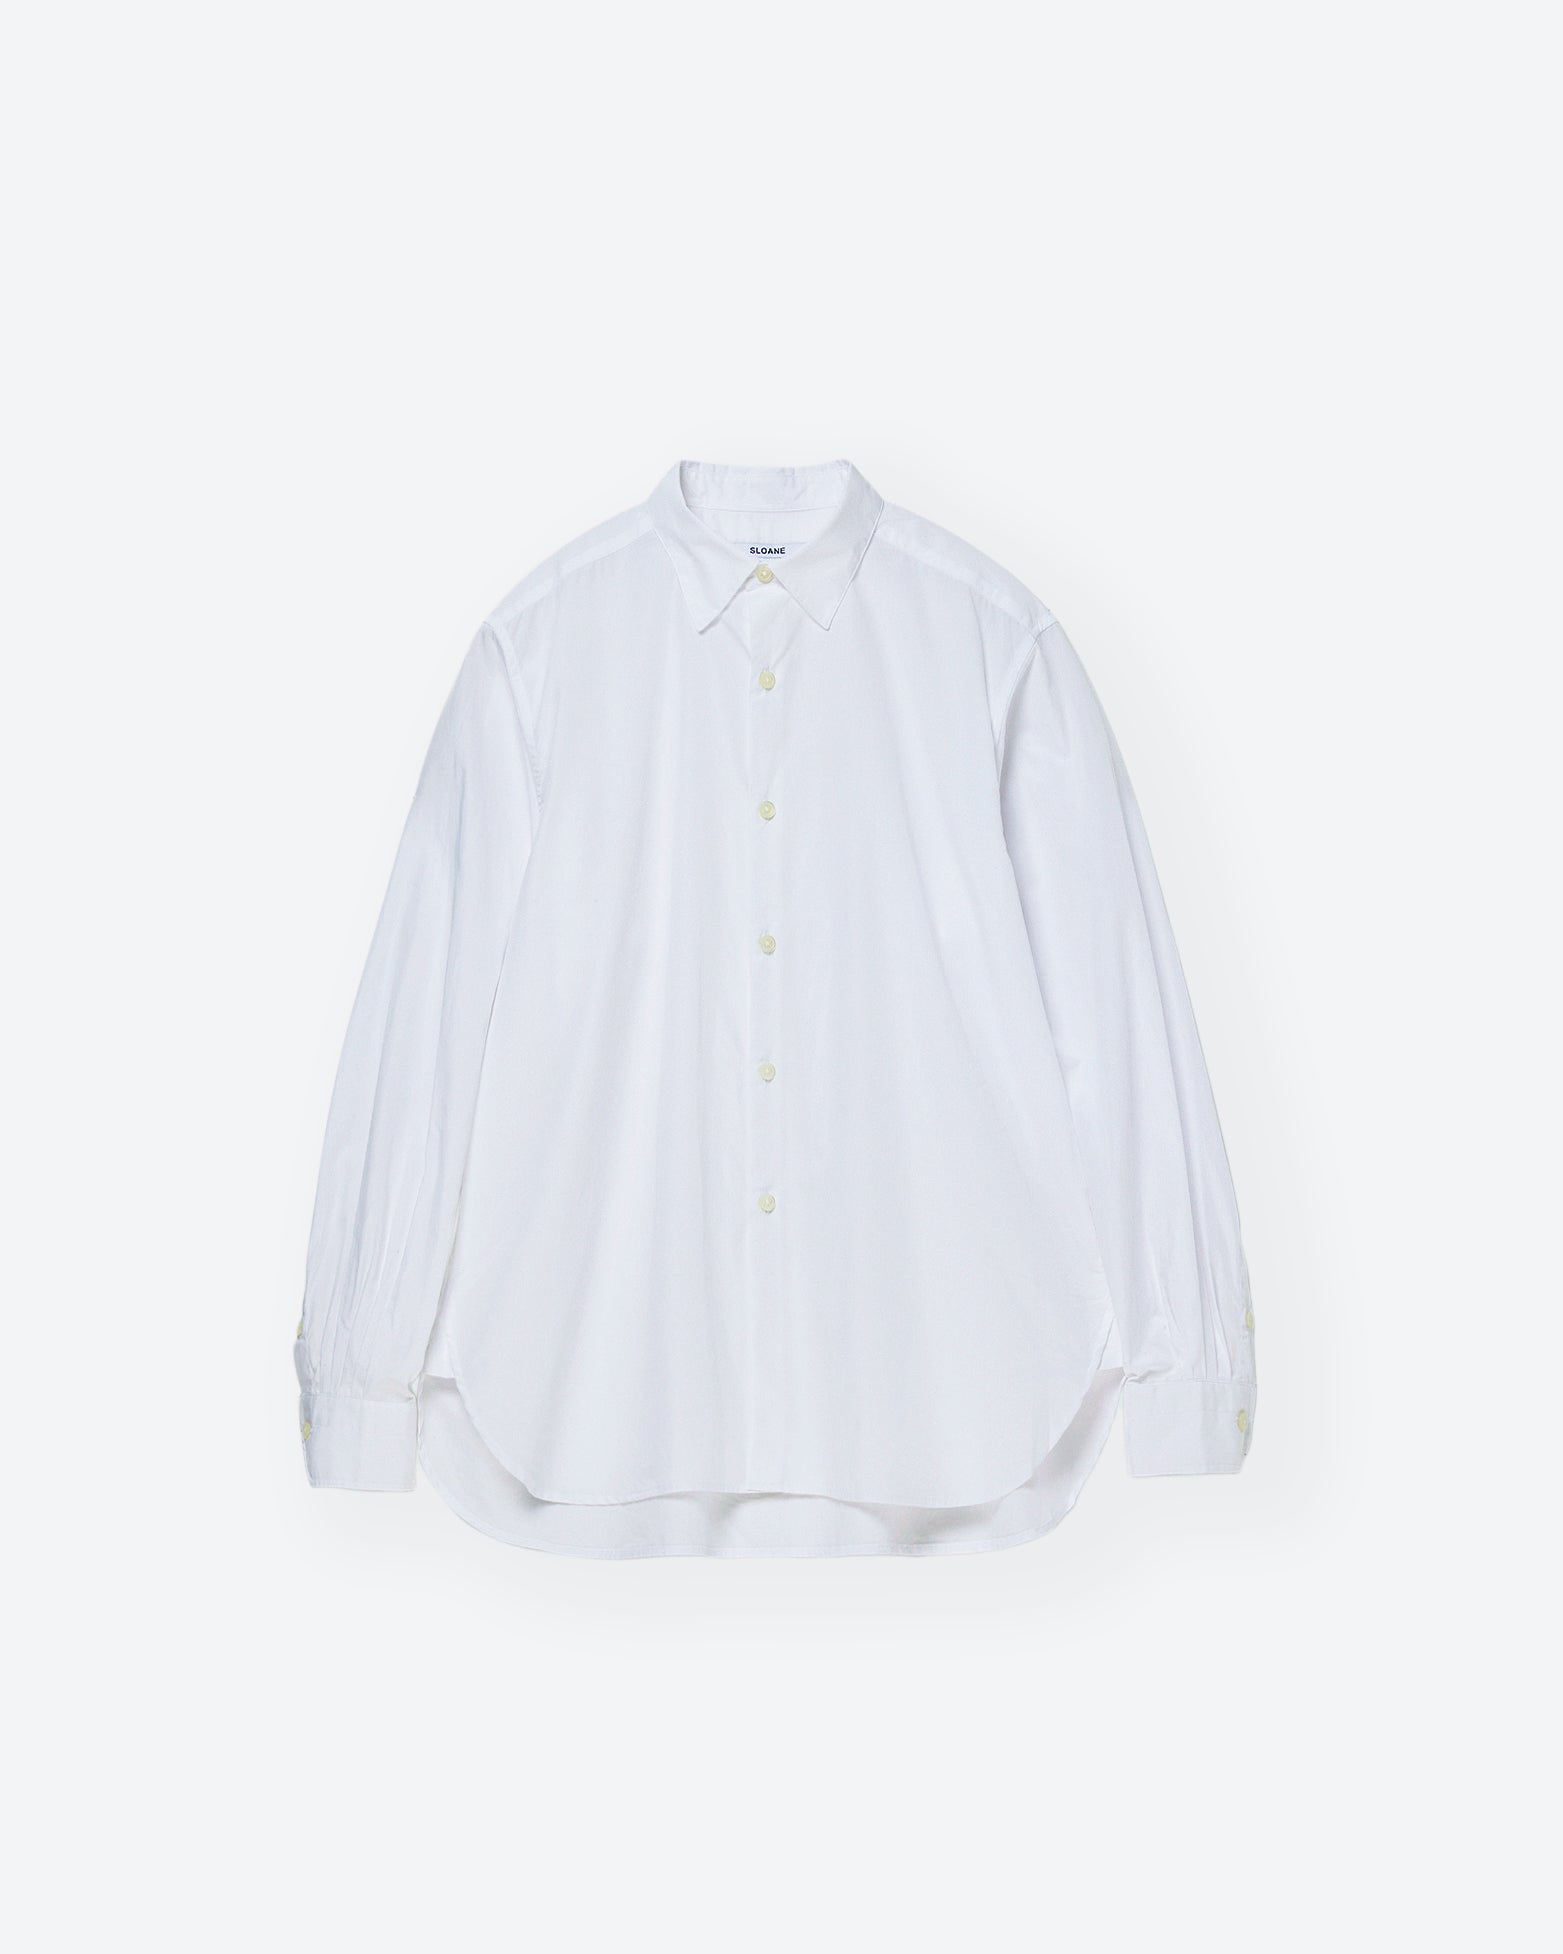 UNISEX】スーピマコットン レギュラーカラーシャツ SL8S-S671